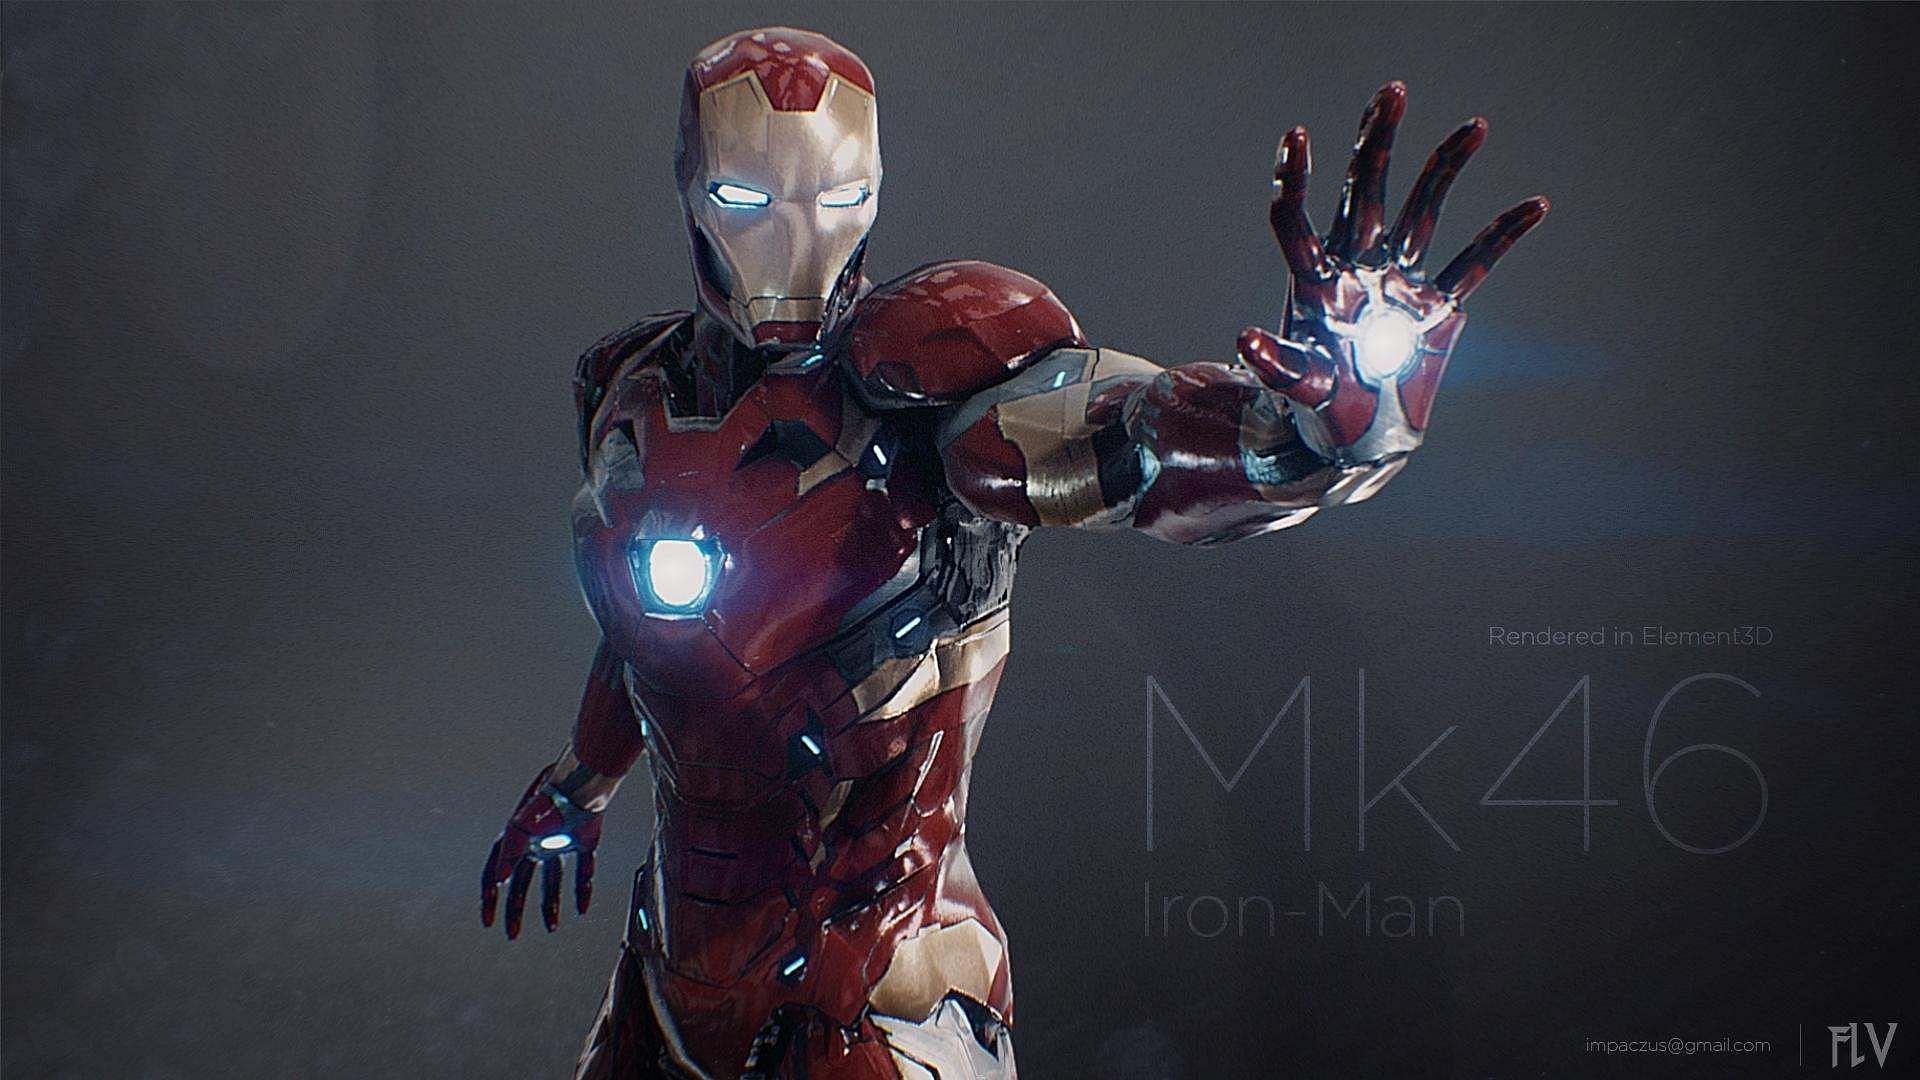 The Iron Man suit Mark XLVI (Image via Marvel)